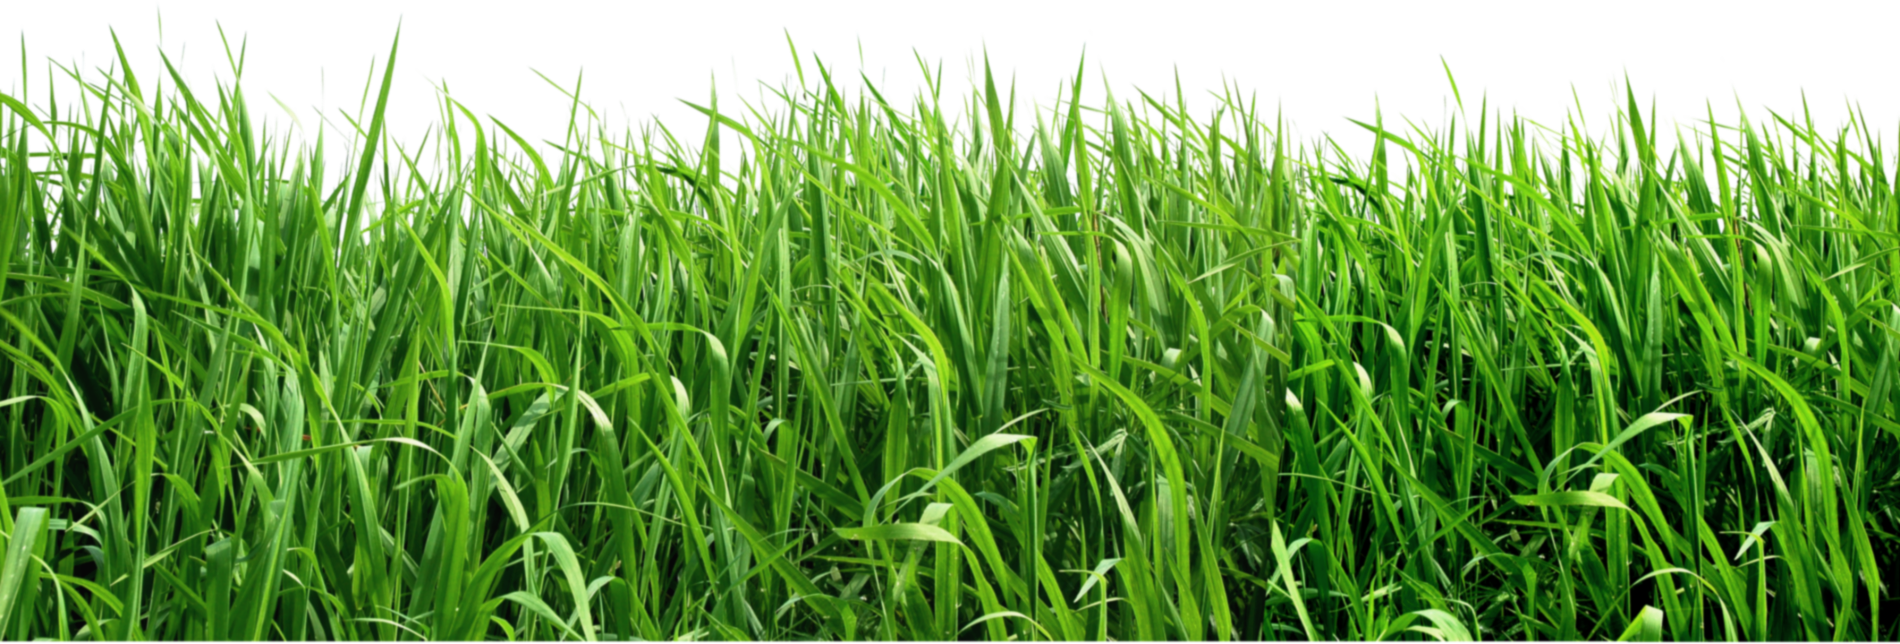 Grass Png Image Green Grass P